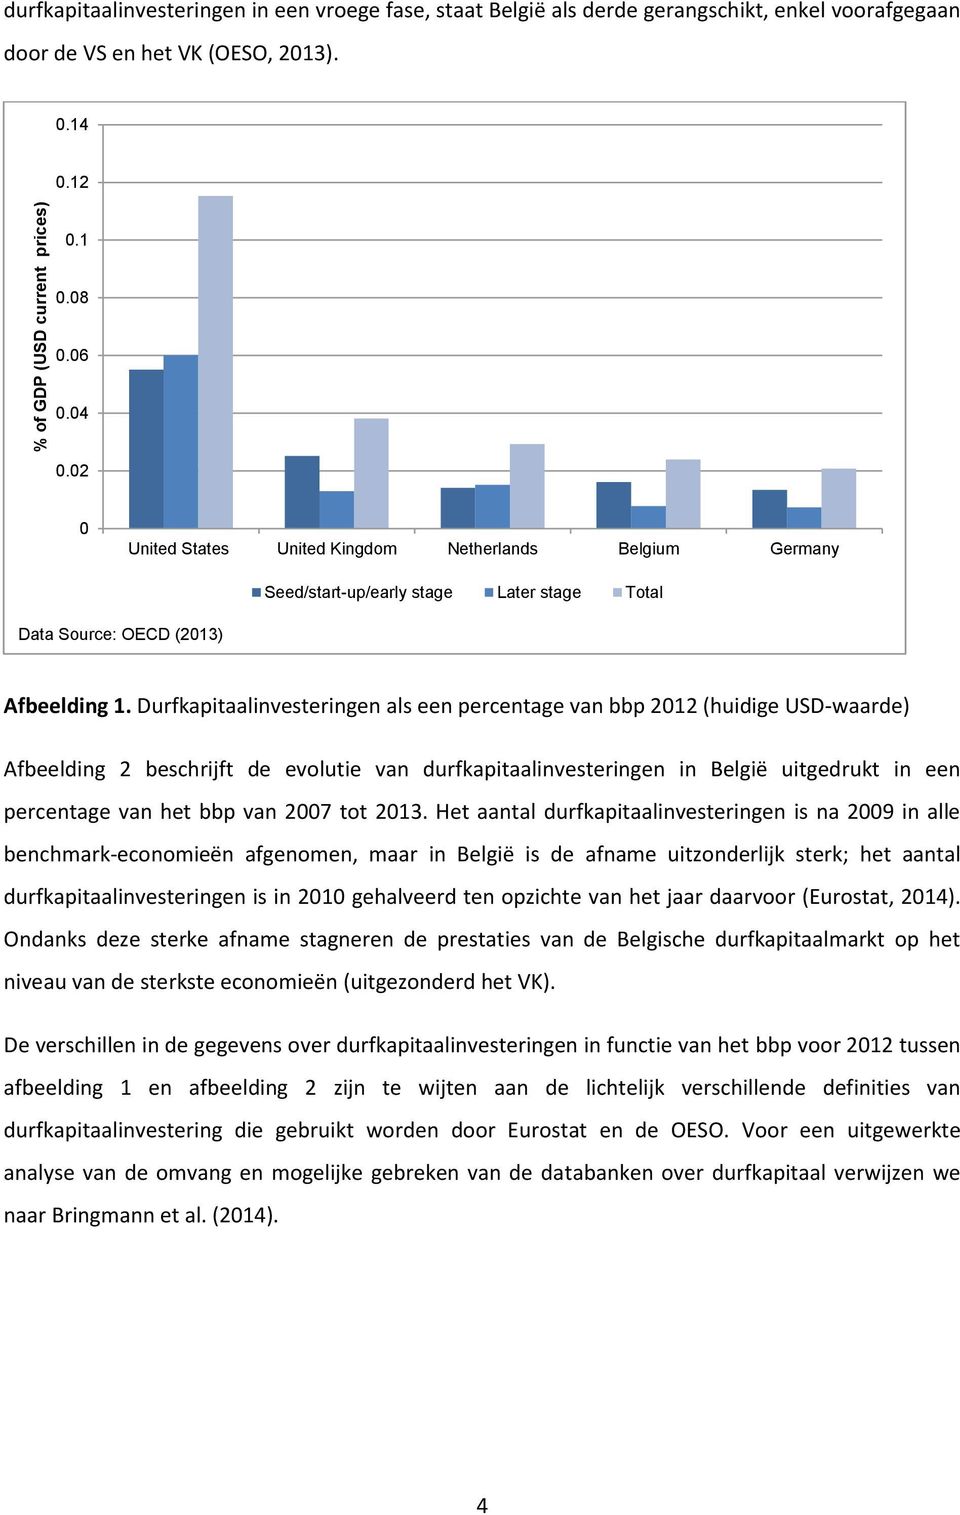 Durfkapitaalinvesteringen als een percentage van bbp 2012 (huidige USD-waarde) Afbeelding 2 beschrijft de evolutie van durfkapitaalinvesteringen in België uitgedrukt in een percentage van het bbp van